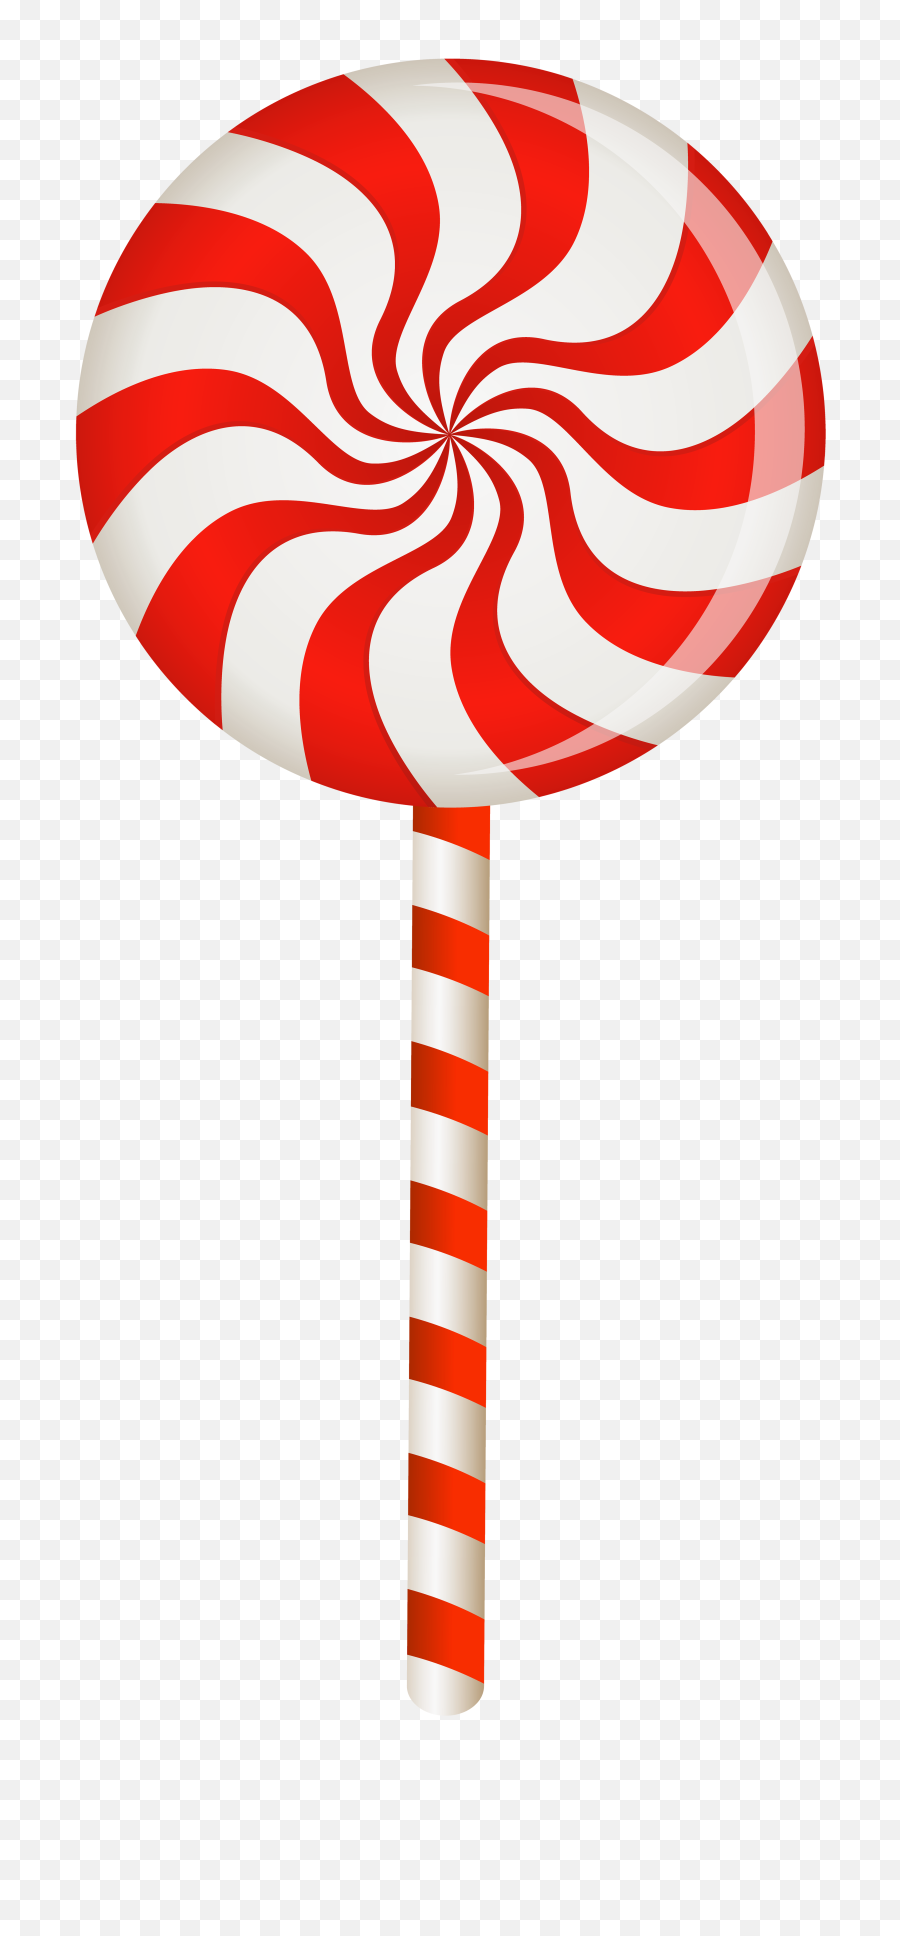 Red Swirl Lollipop Png Clip Art Image - Lollipop Png Clipart,Swirl Clipart Transparent Background